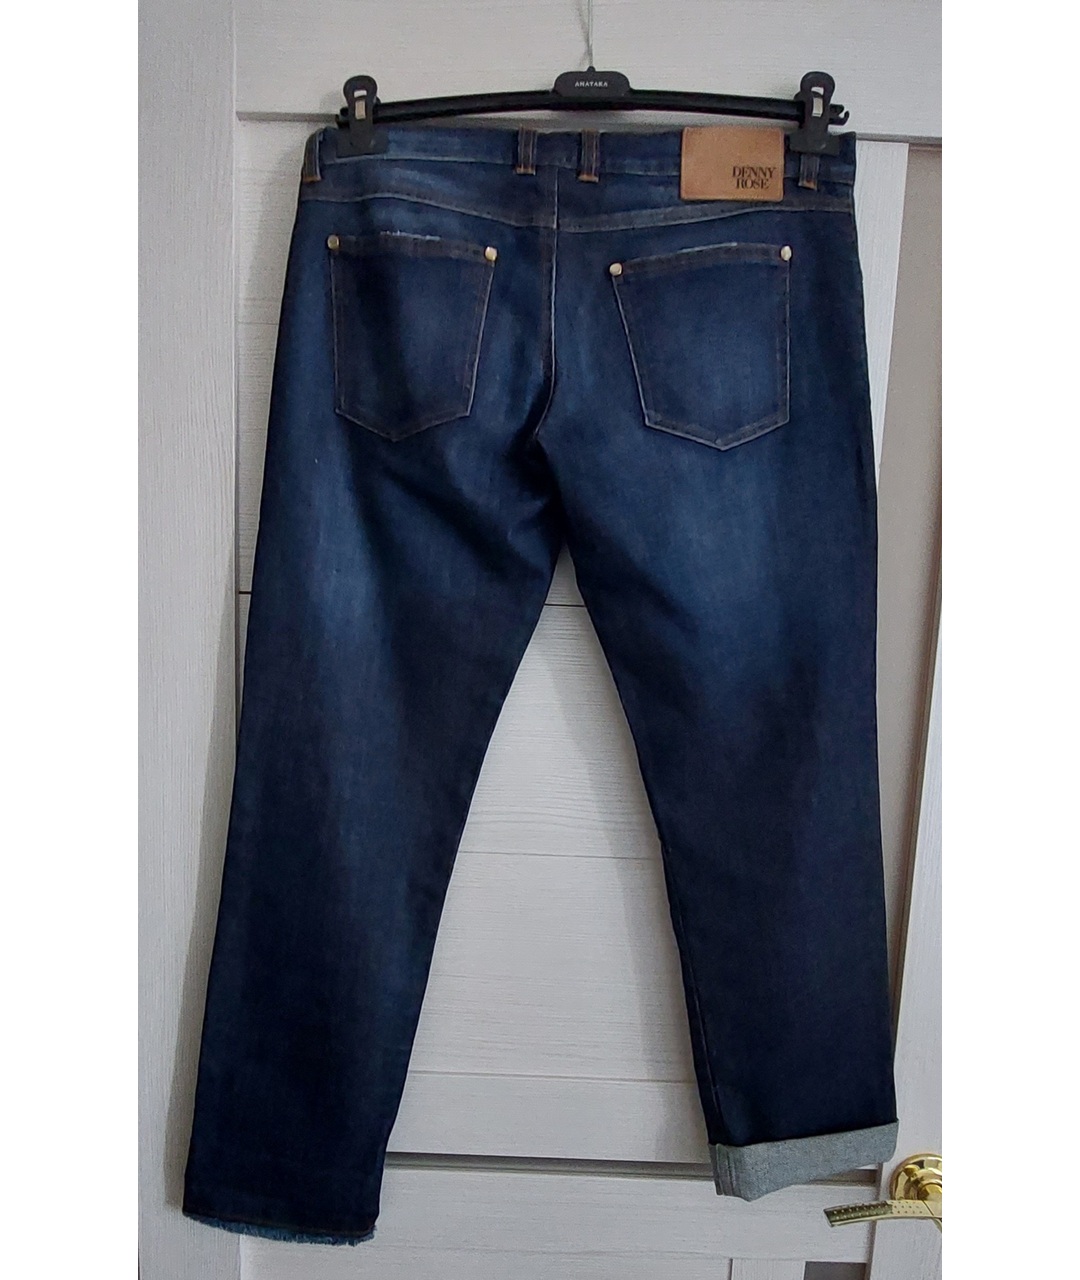 DENNY ROSE Темно-синие хлопковые прямые джинсы, фото 2